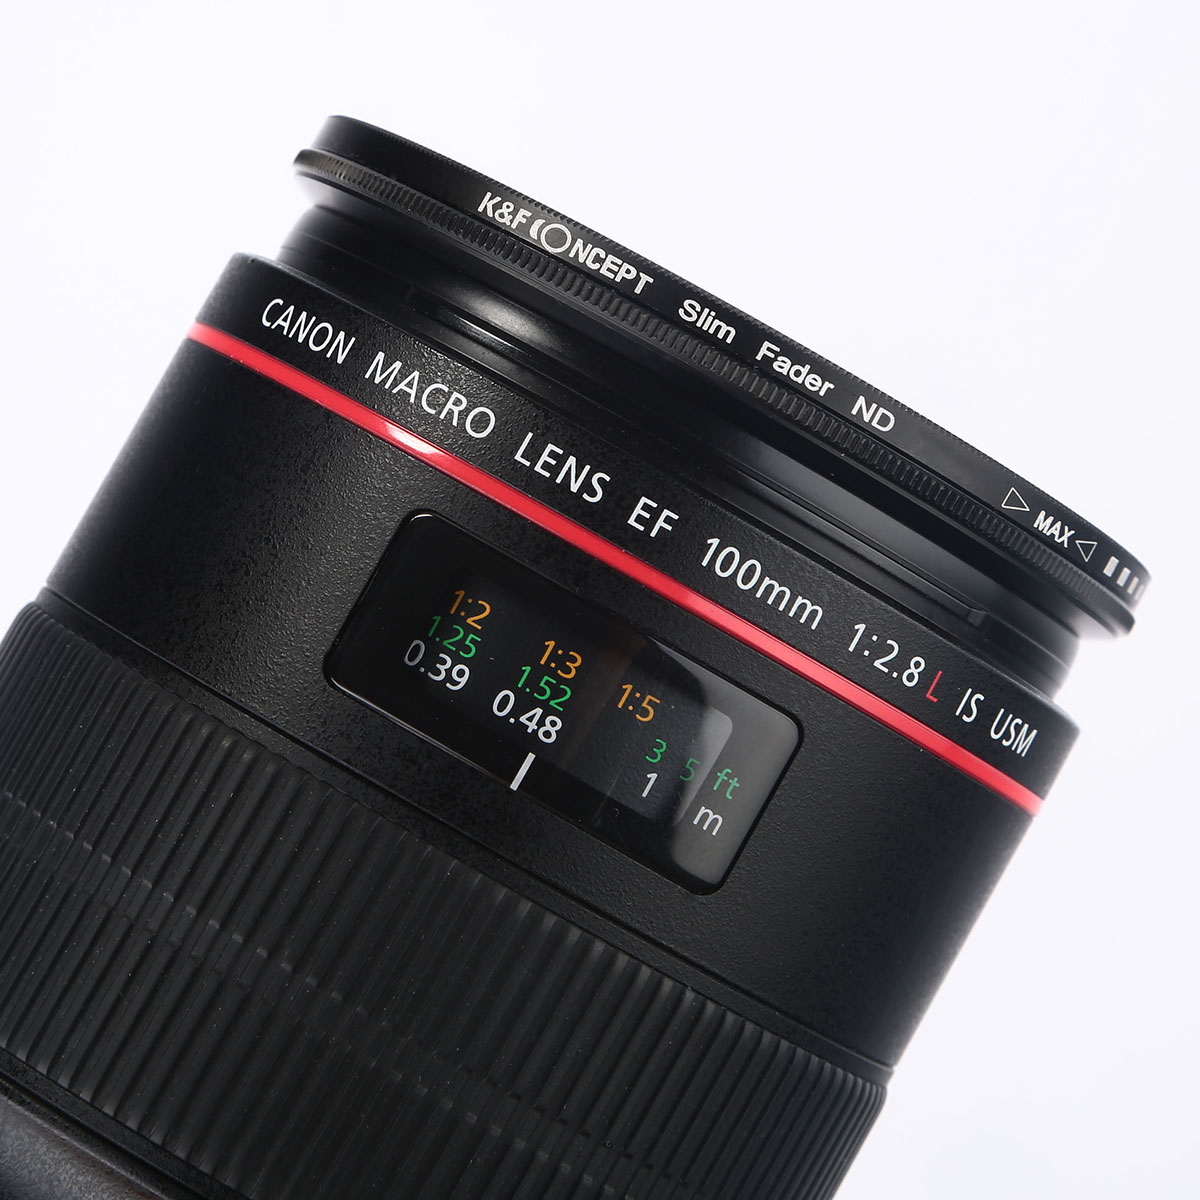 فیلتر لنز کی اند اف مدل ND2-ND400 72mm